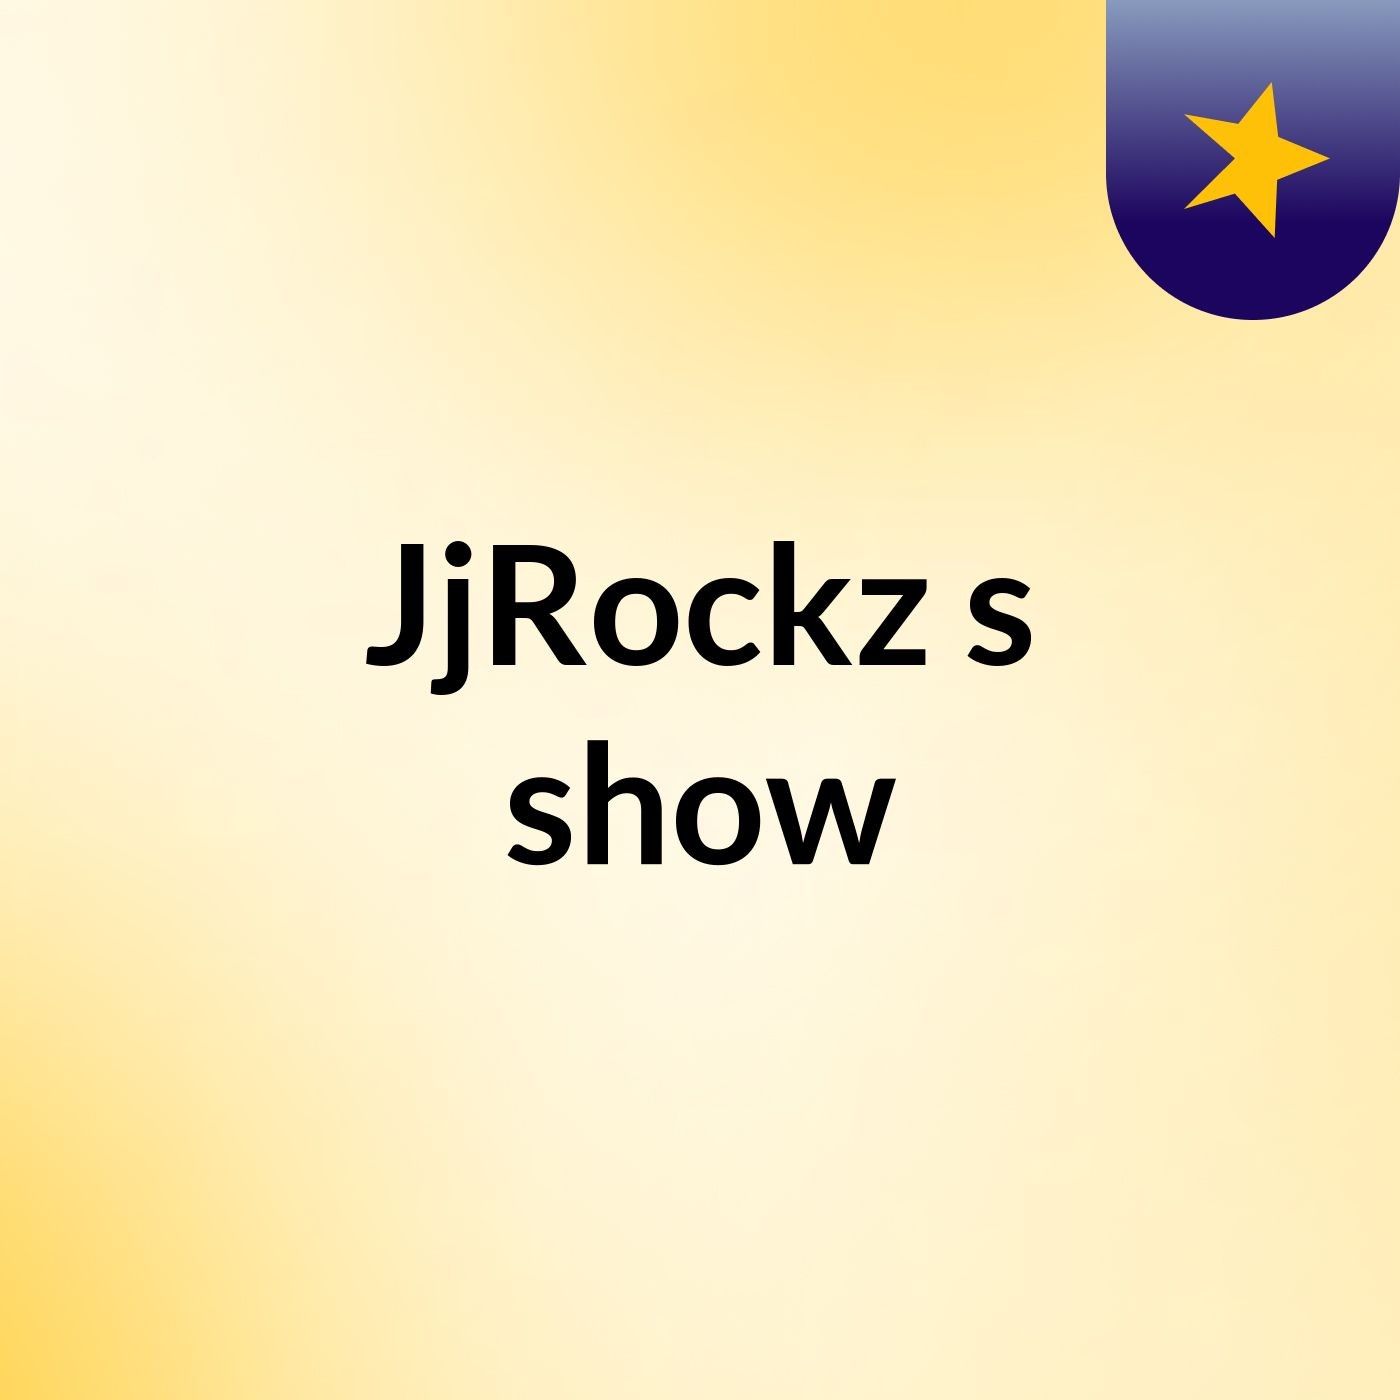 JjRockz's show